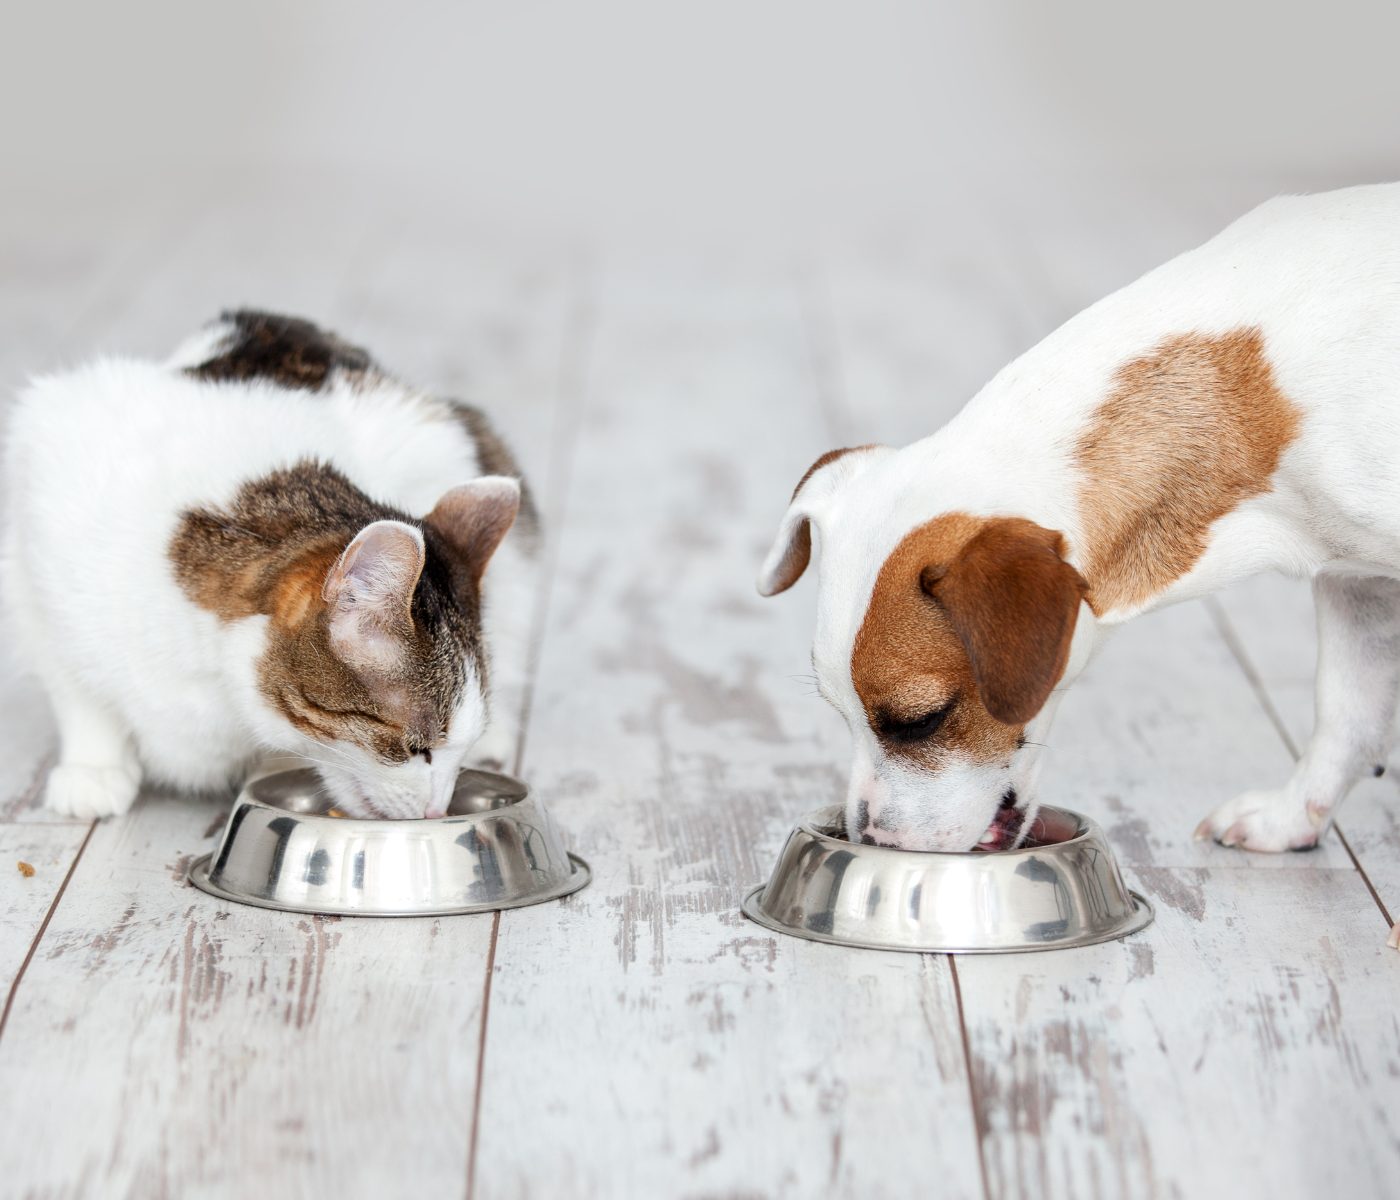 Nutracêuticos na dieta de cães e gatos